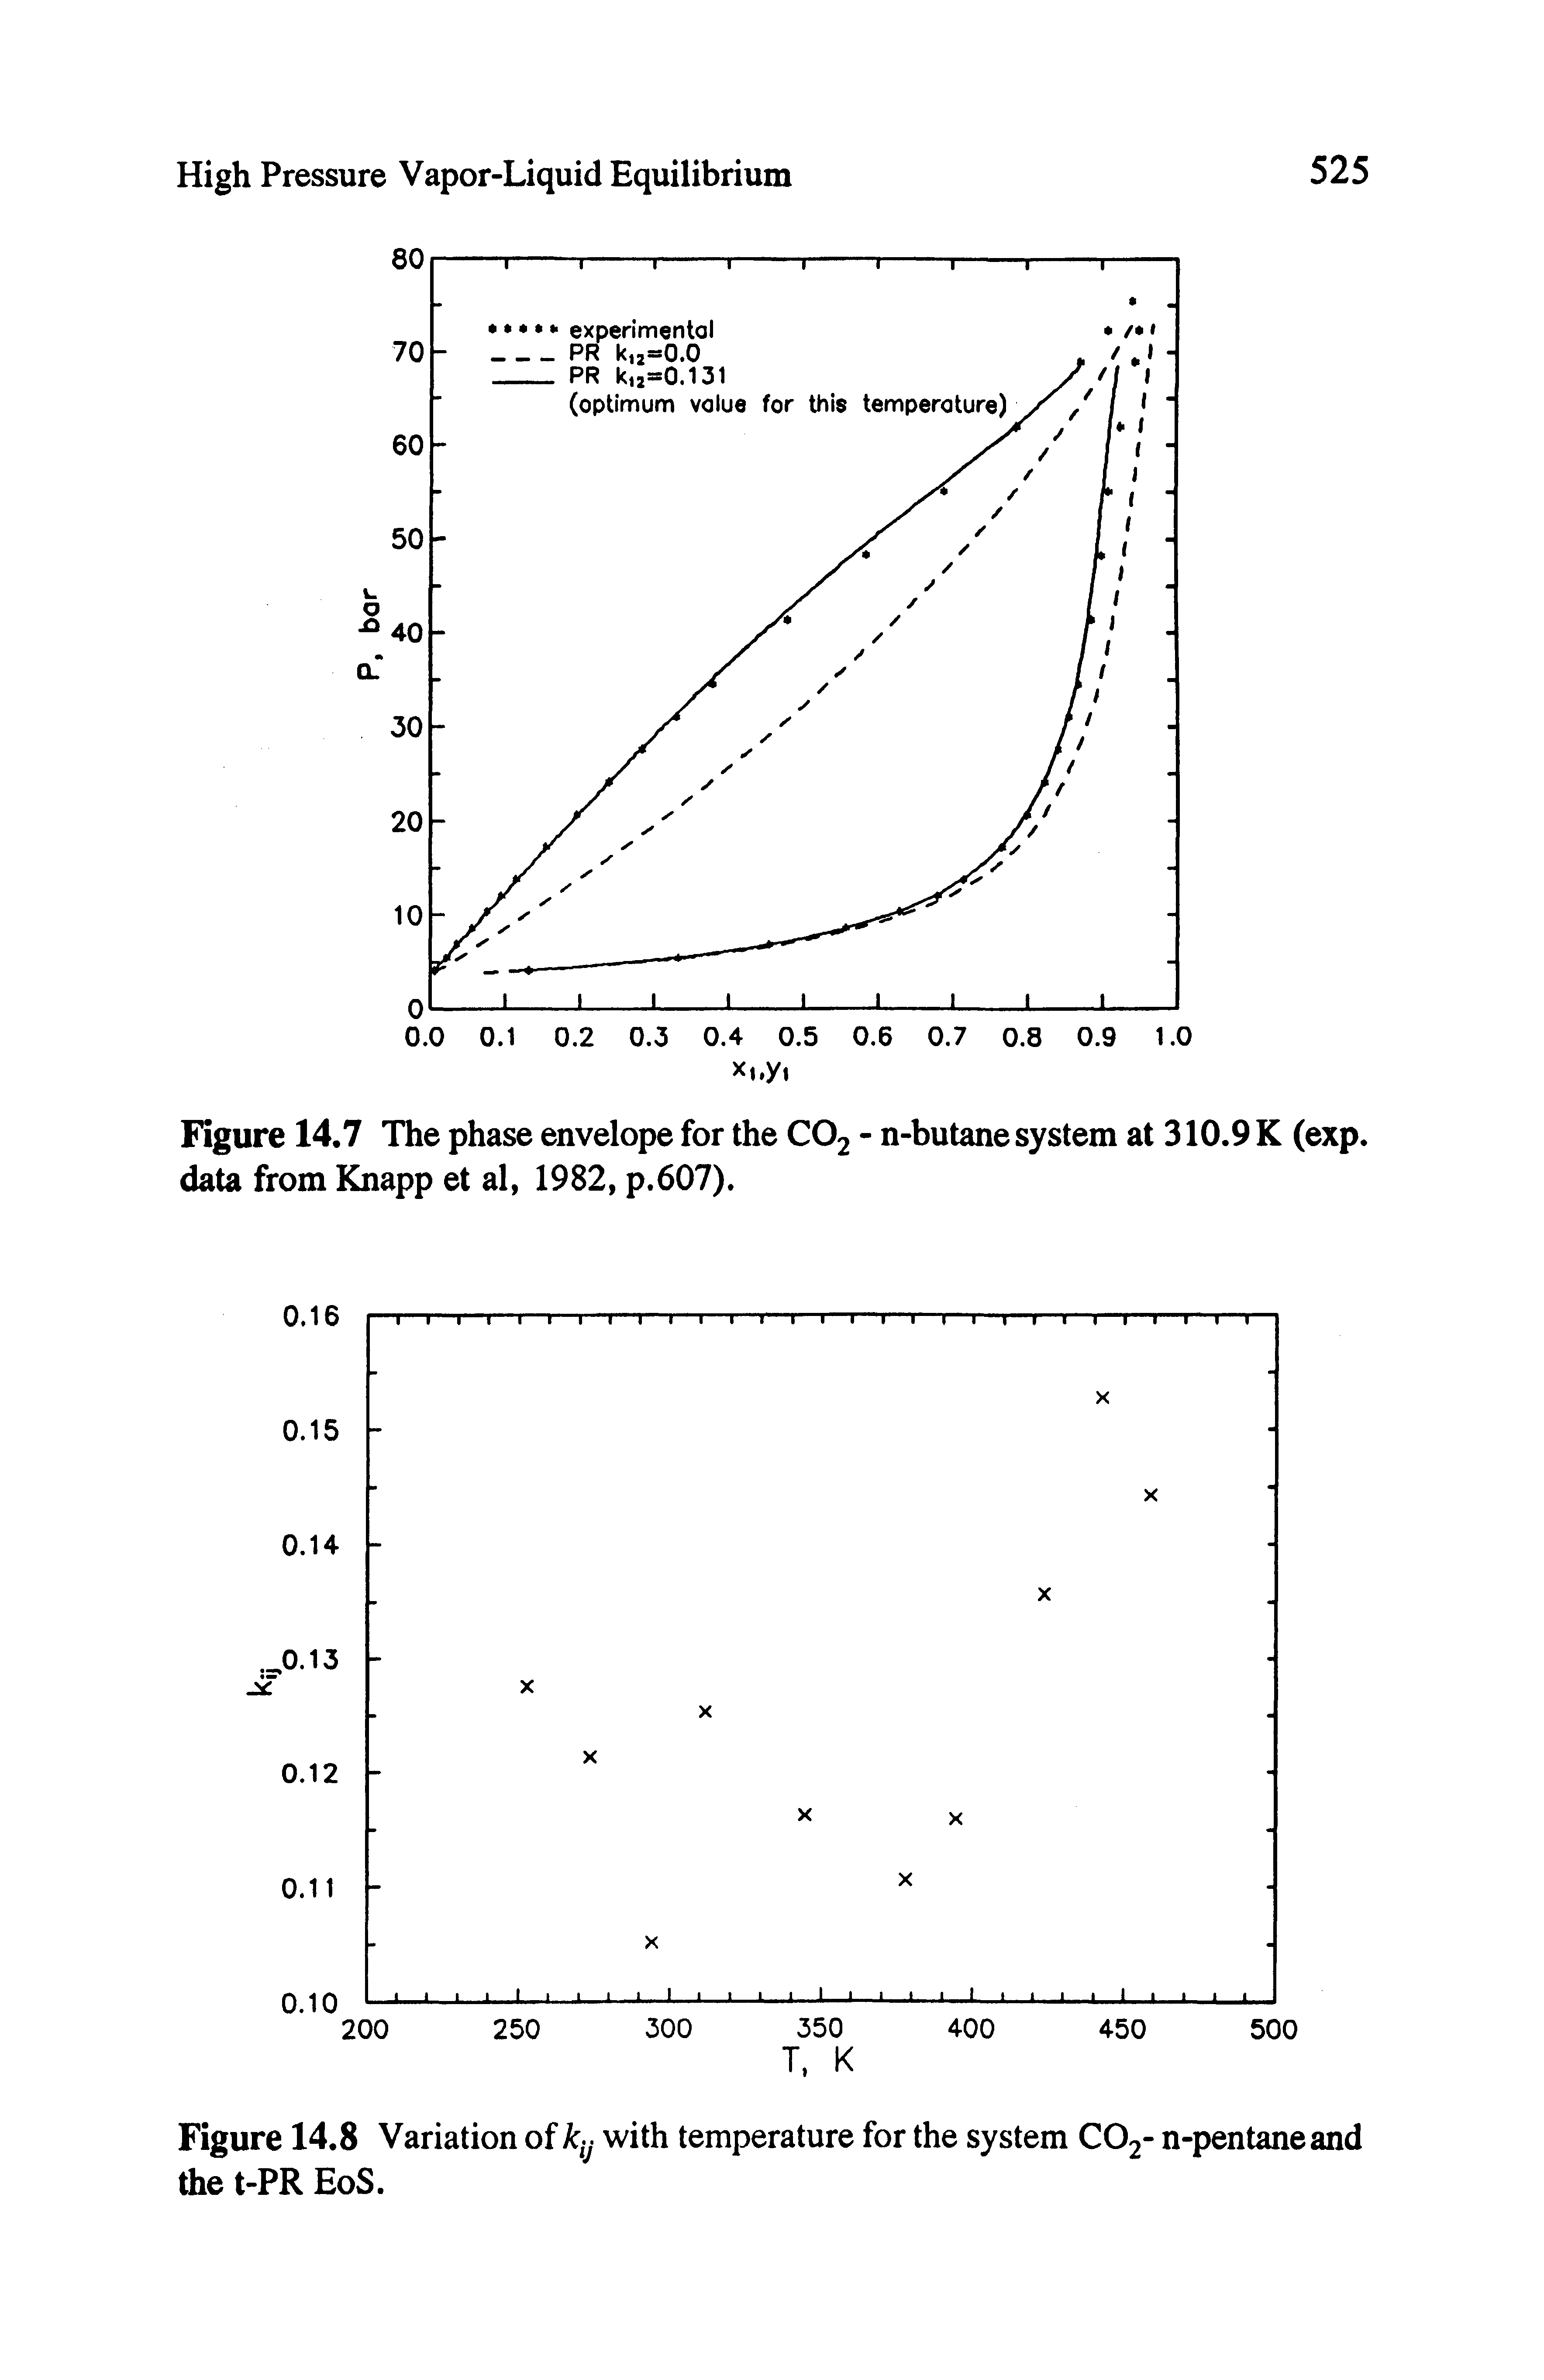 Figure 14,7 The phase envelope for the CO2 - n-butane system at 310.9 K (exp. data from Knapp et al, 1982, p.607).